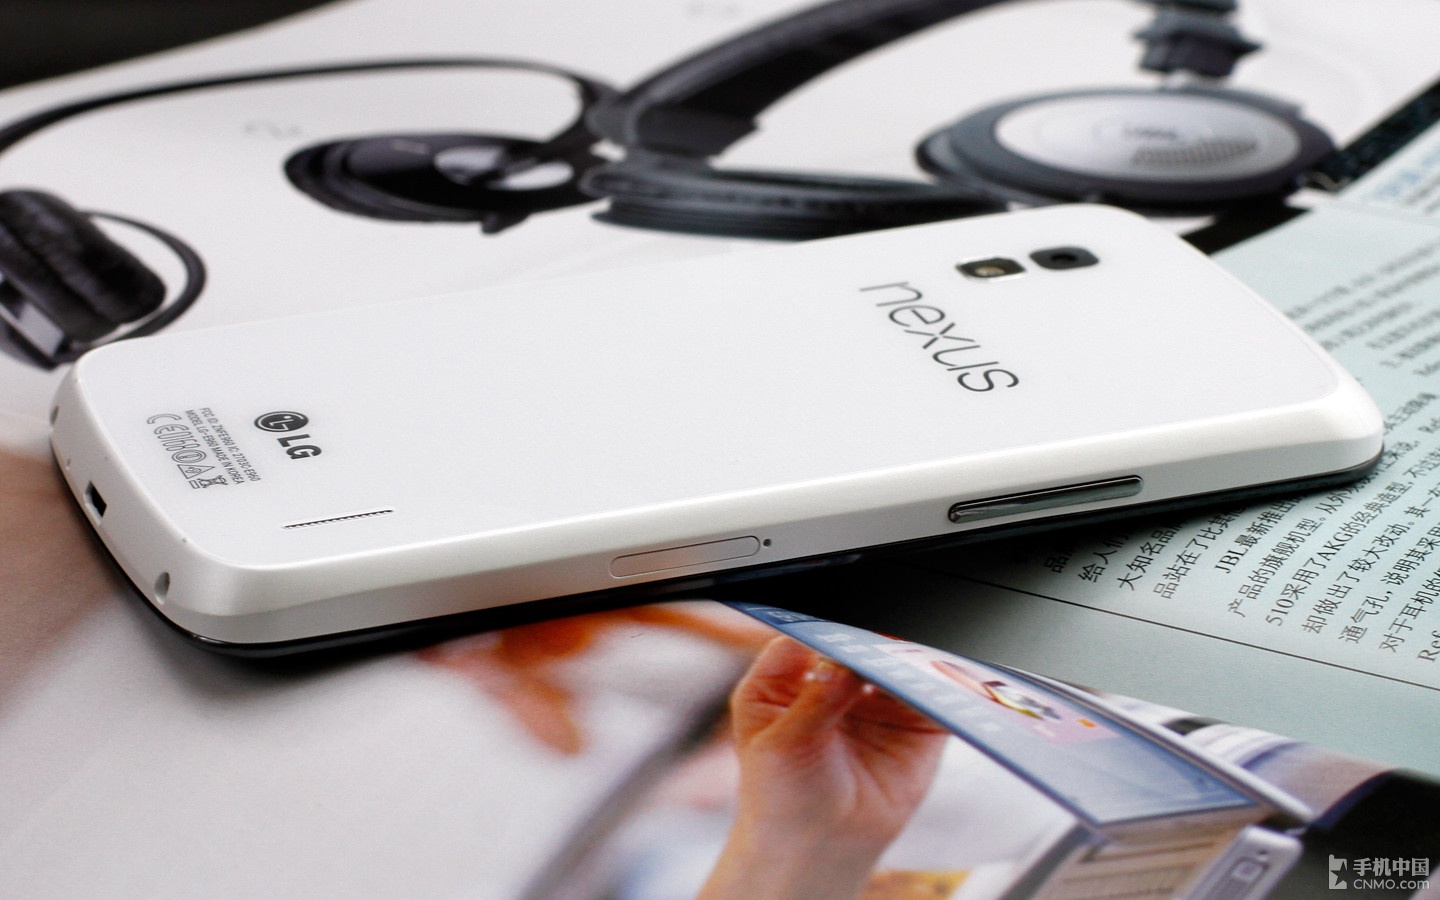 谷歌四太子换新装 白色版Nexus 4图赏